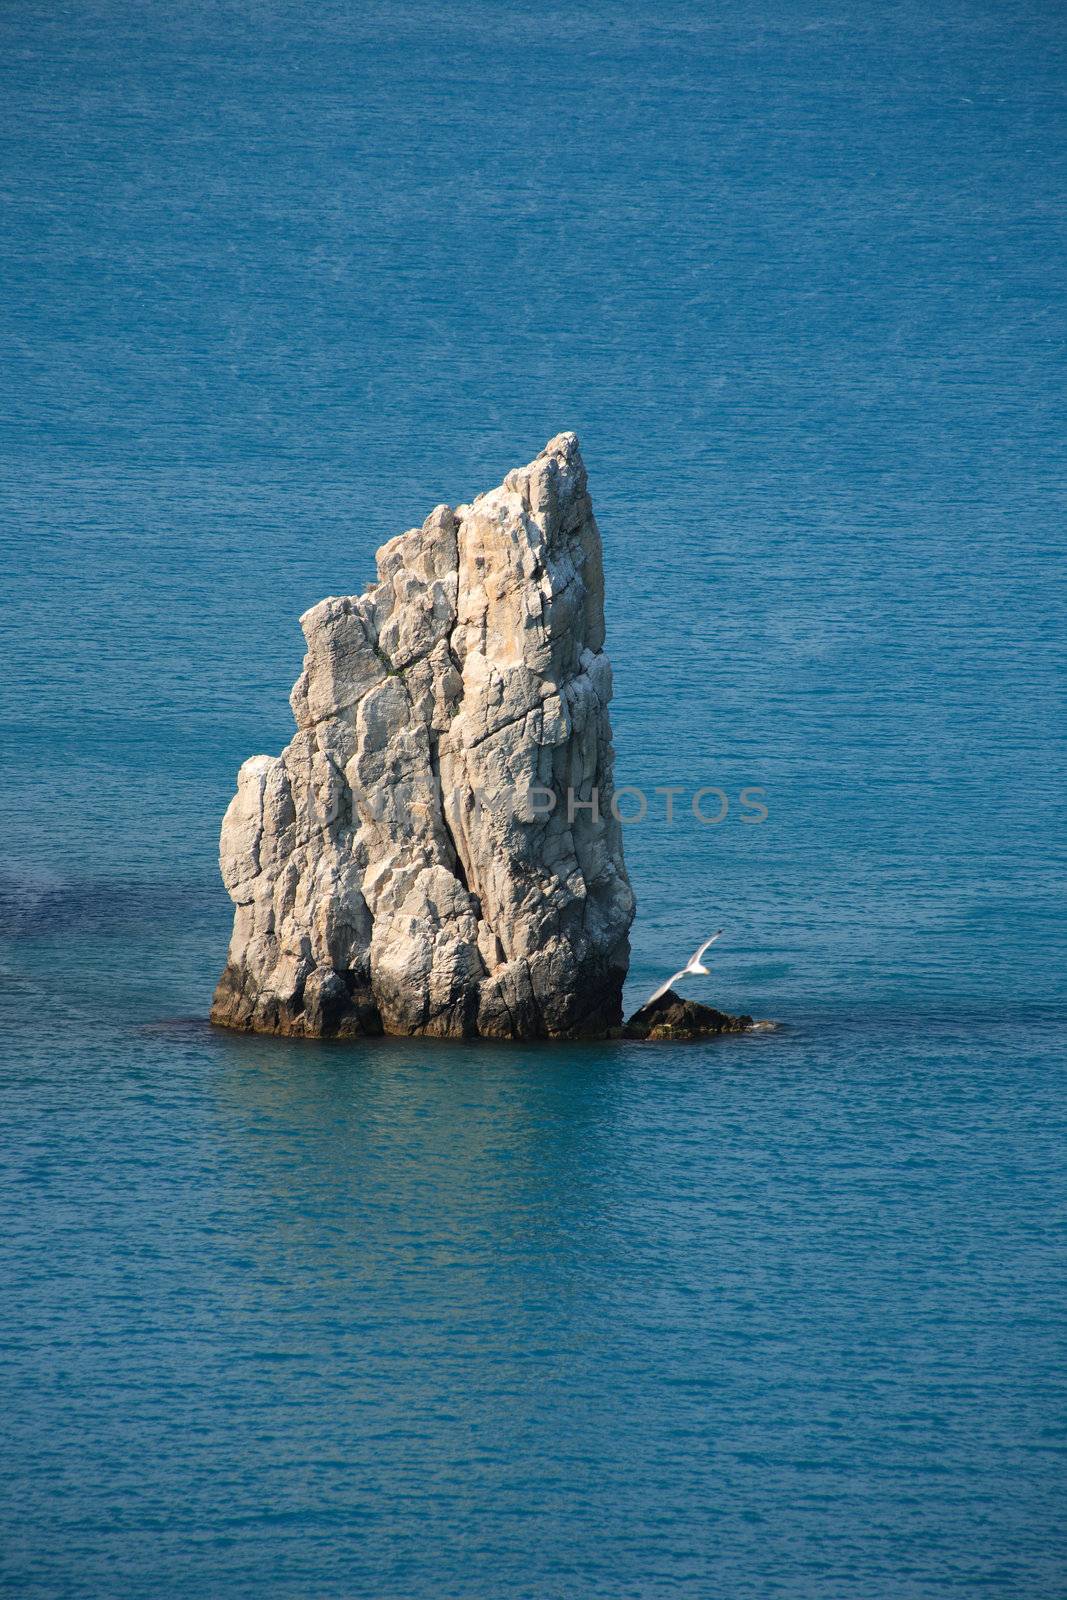 Sailing Rock by kvkirillov